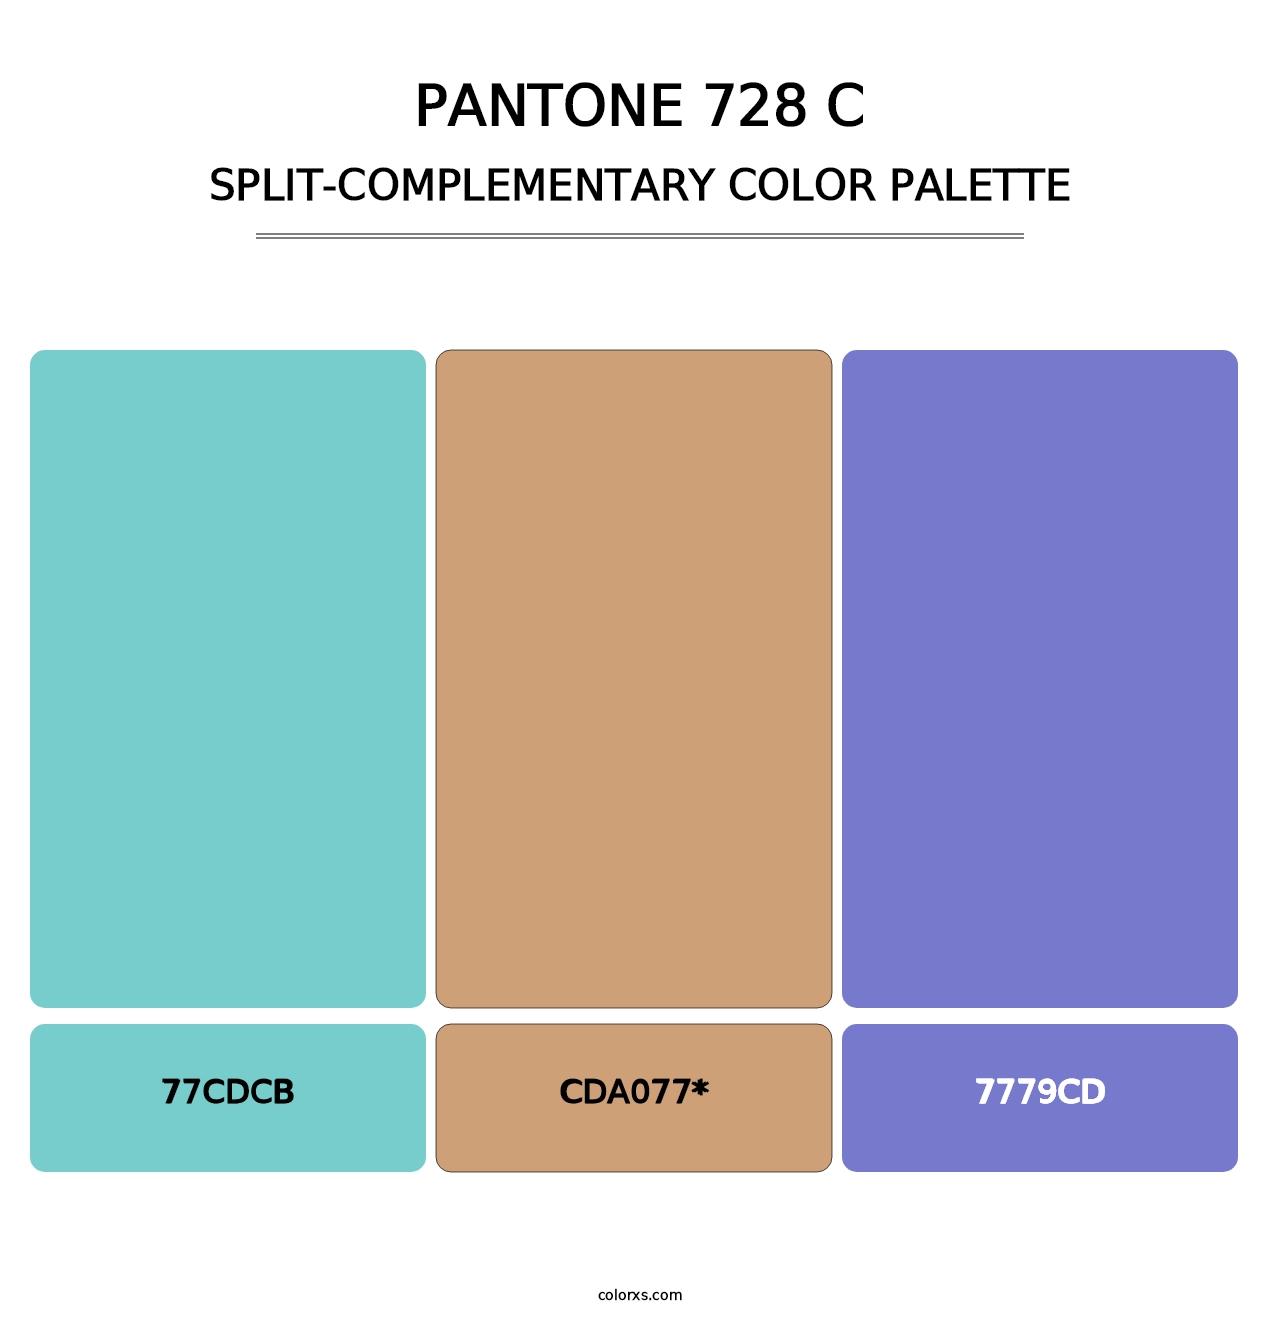 PANTONE 728 C - Split-Complementary Color Palette